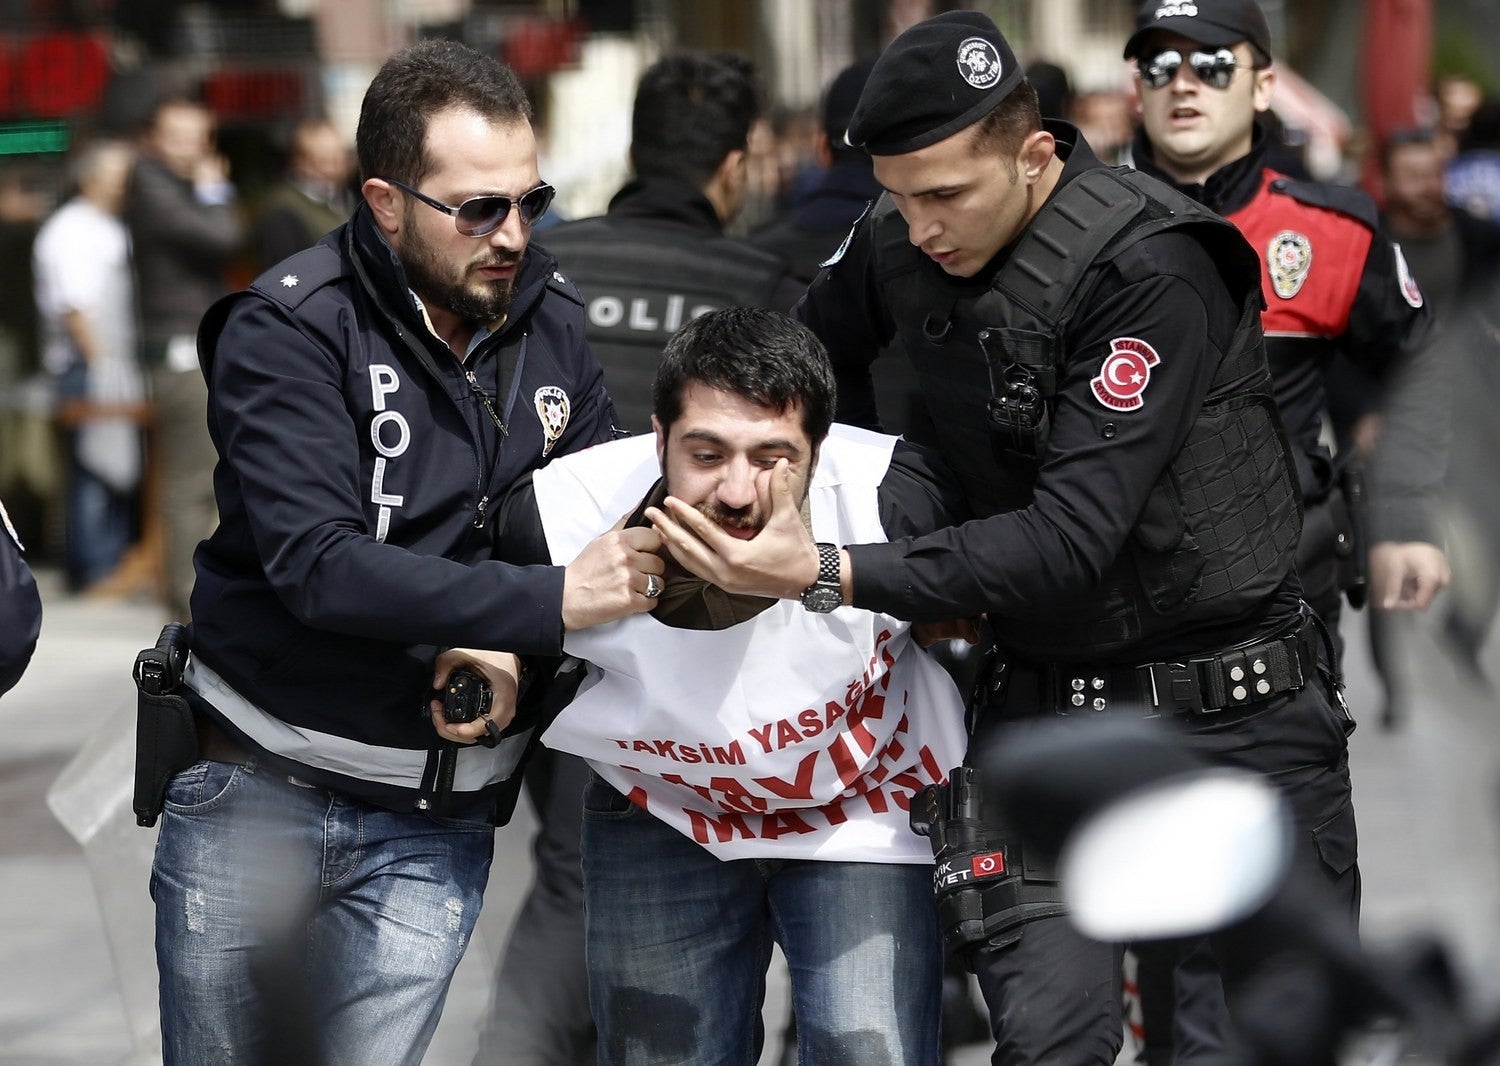 Τέσσερις Τούρκοι αποβιβάστηκαν στη Ρόδο – Δηλώνουν «Γκιουλενιστές» και ζητούν άσυλο – Περίεργο περιστατικό - Φωτογραφία 1